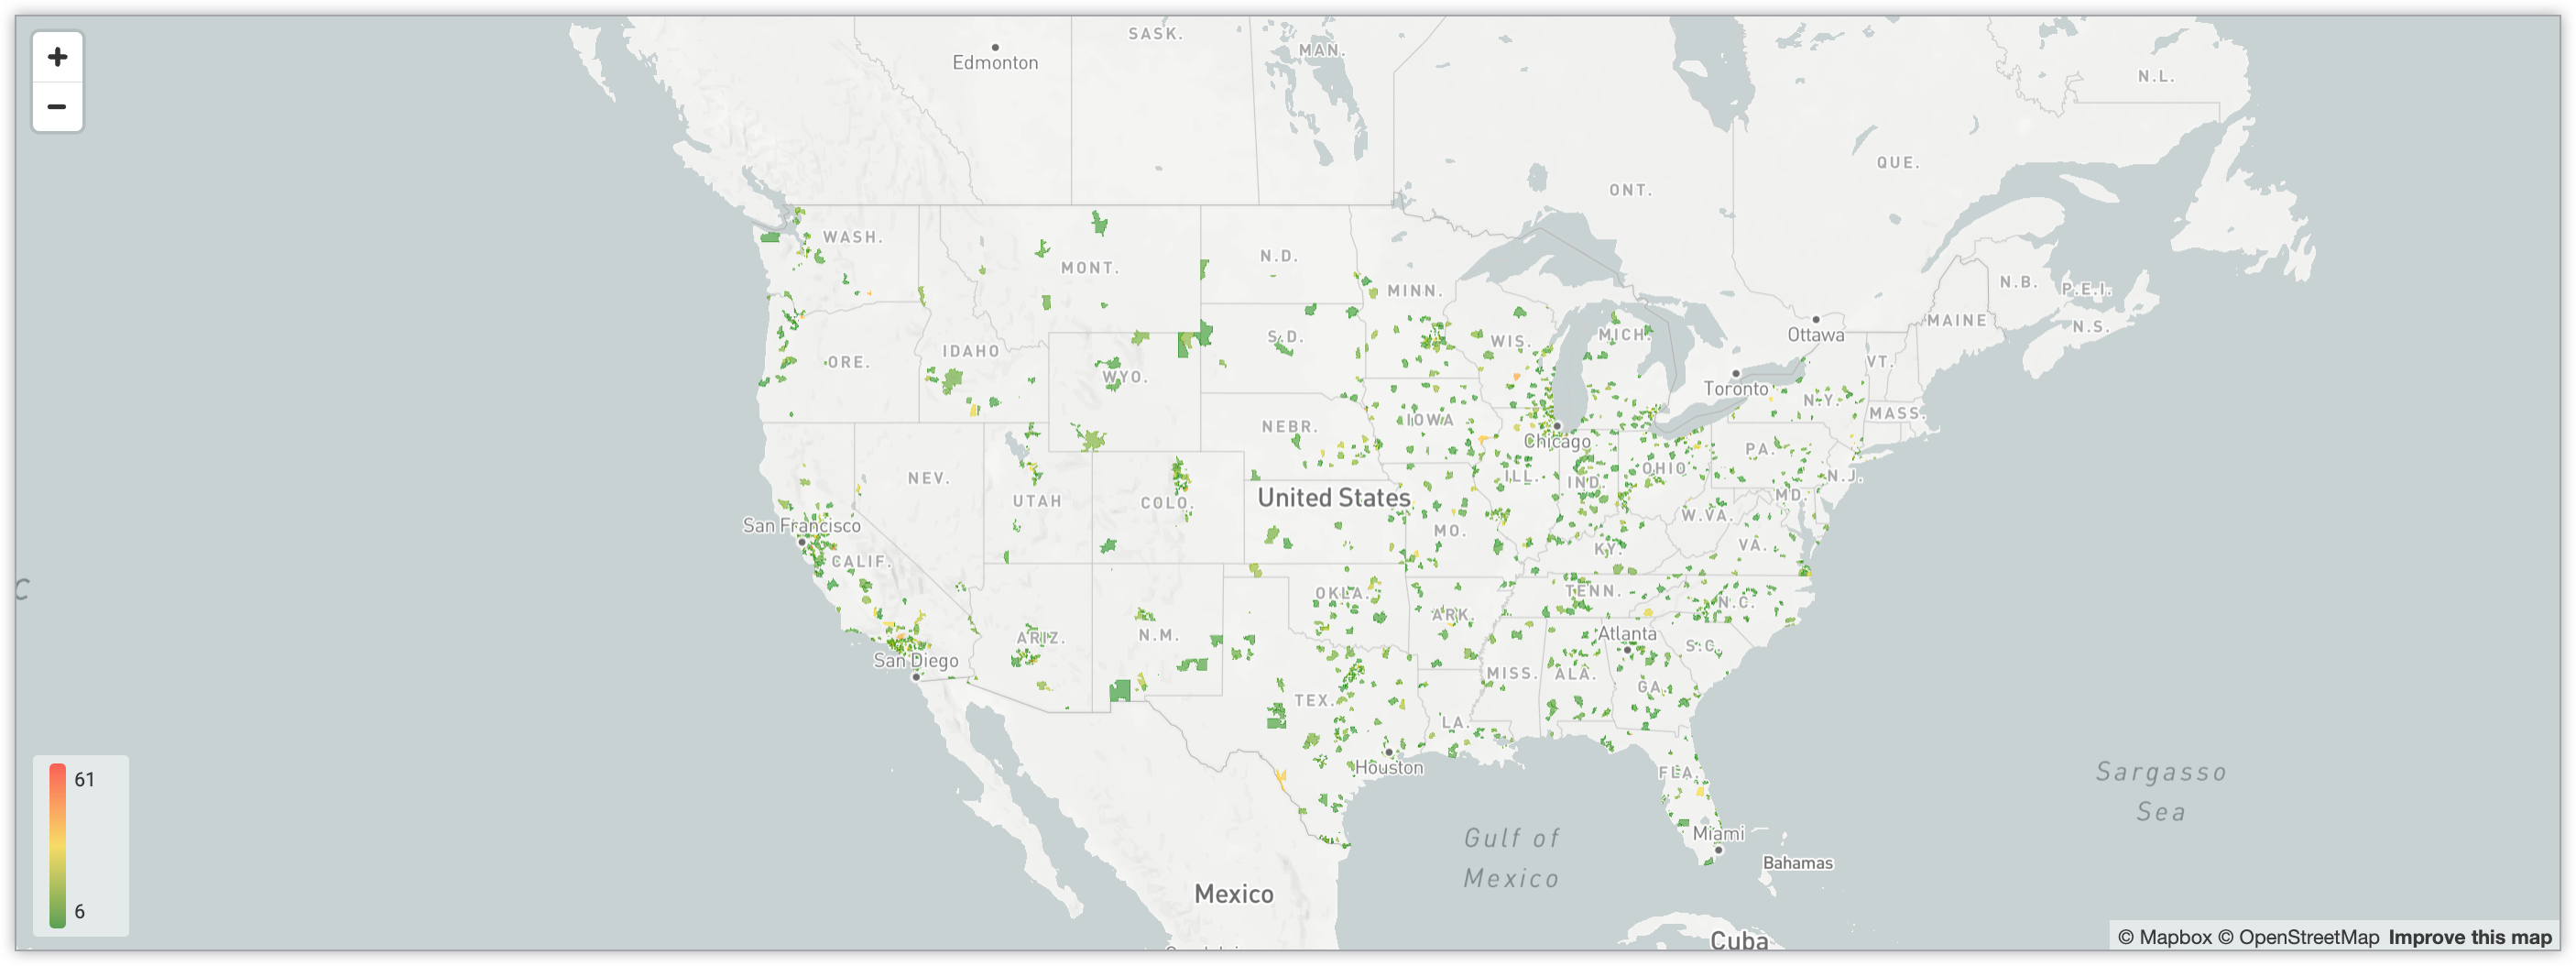 Interaktive Karte, die die Anzahl der Nutzer in den verschiedenen Postleitzahlengebieten in den USA mithilfe eines Farbverlaufs-Systems zeigt.